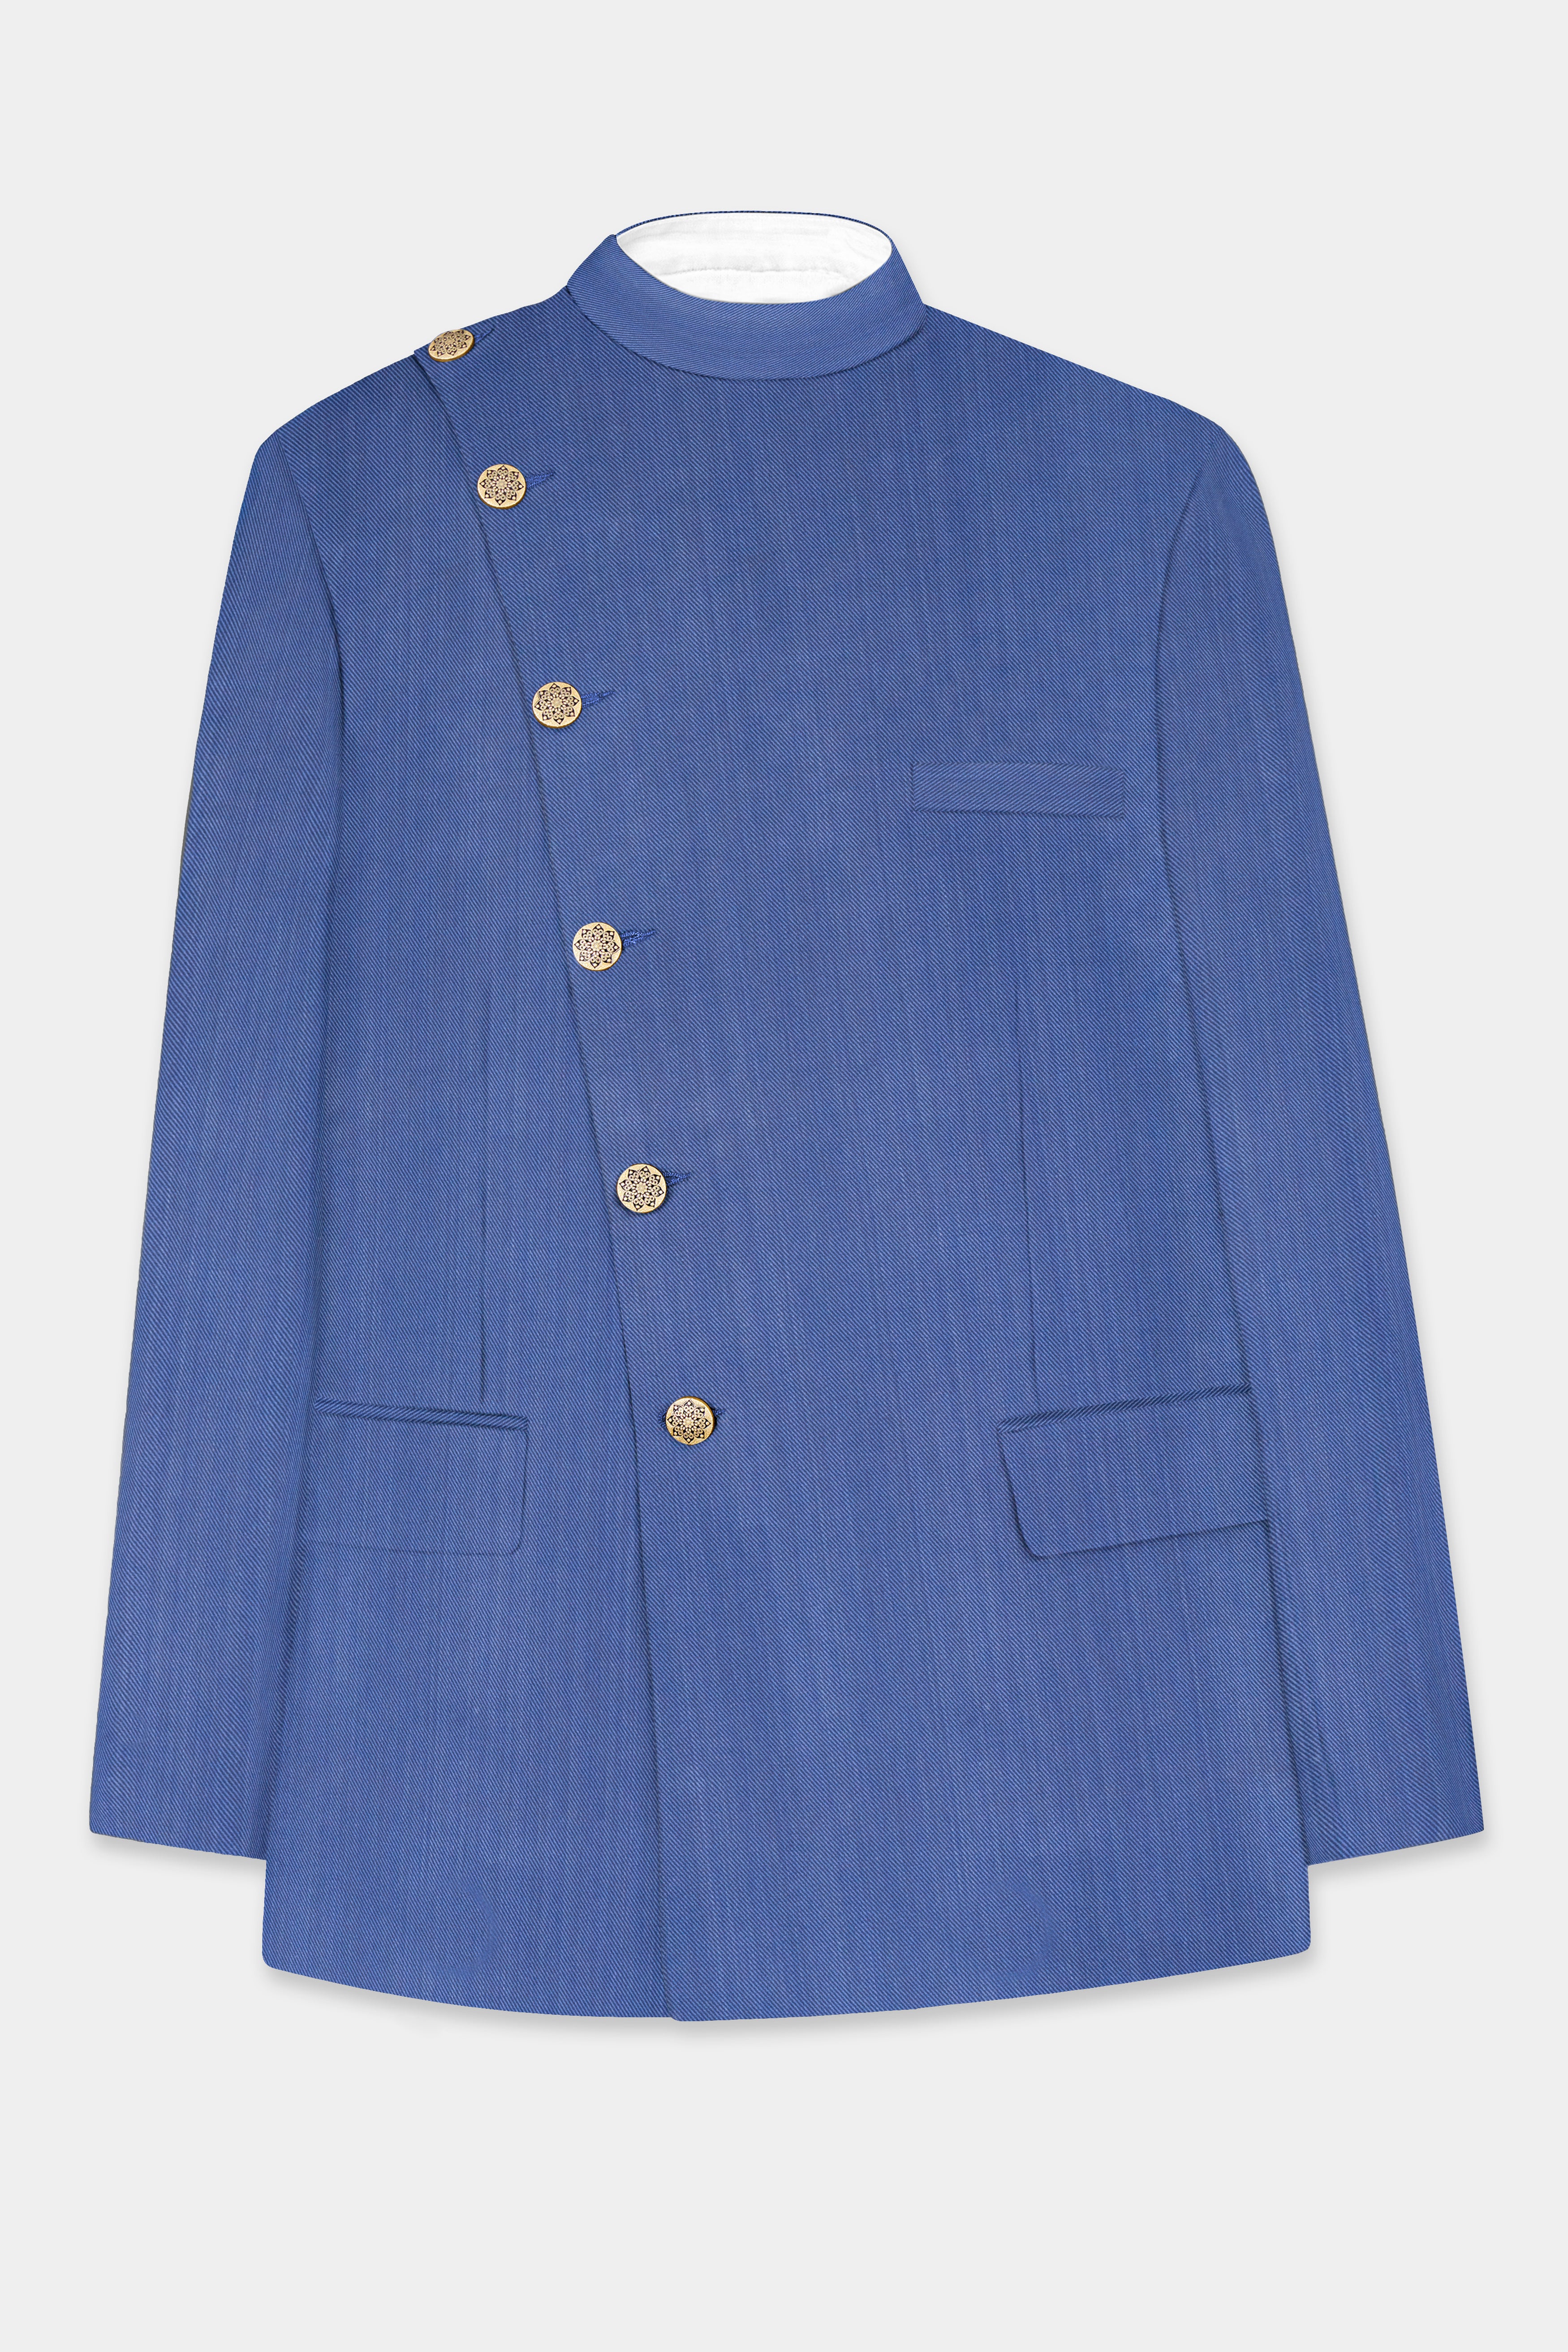 Twilight Blue Premium Cotton Cross Placket Bandhgala Suit